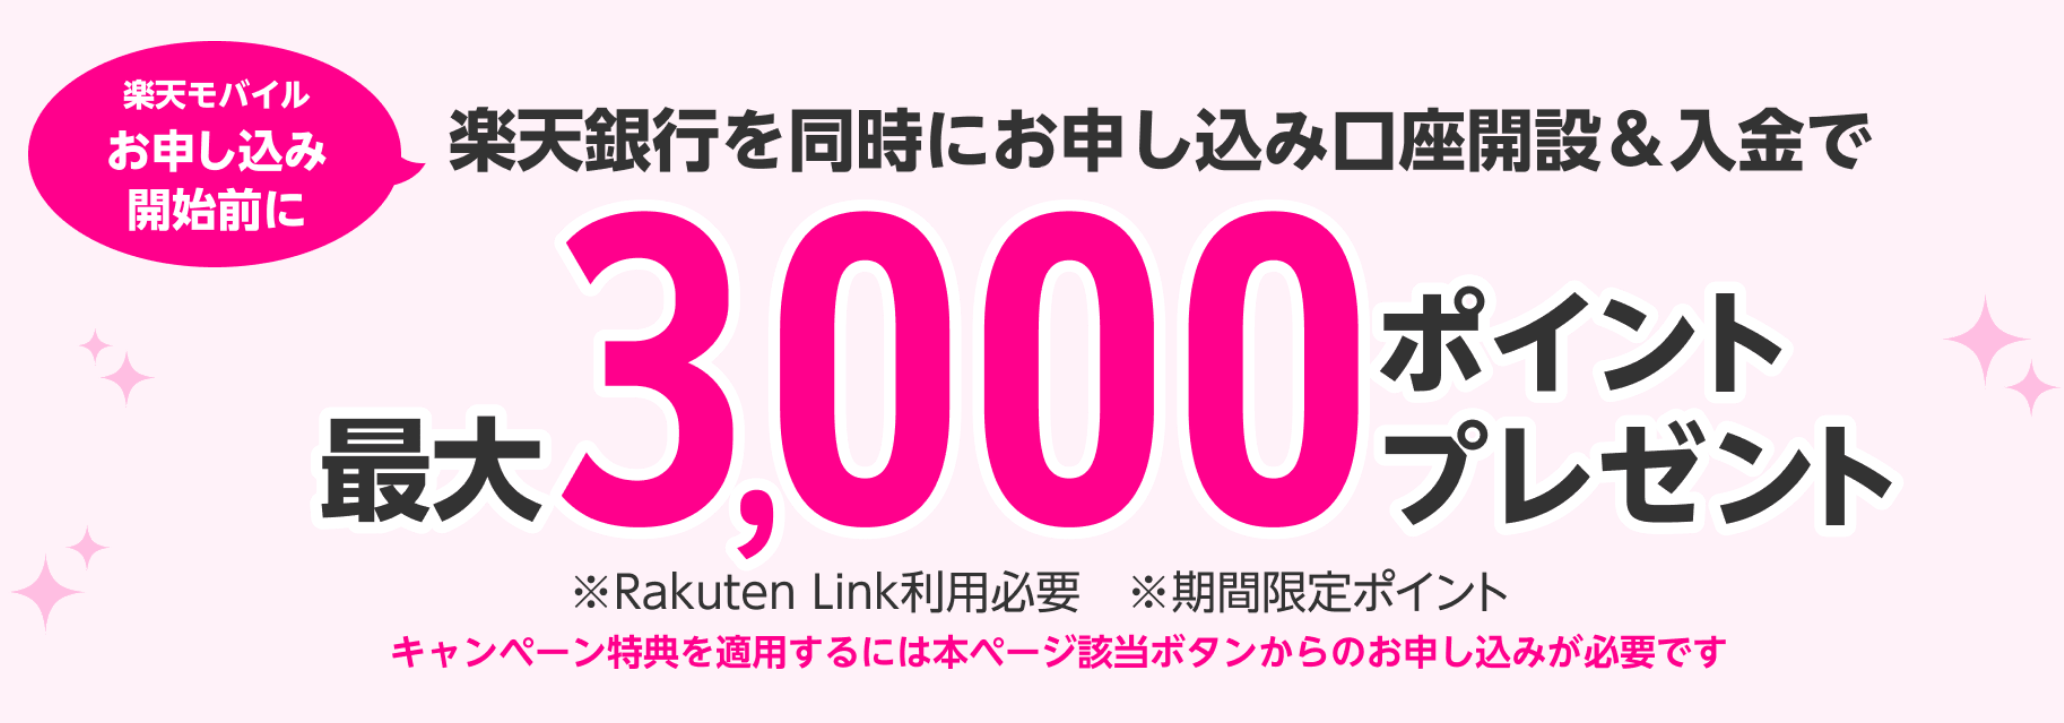 【楽天銀行】口座開設で最大3,000ポイント増額